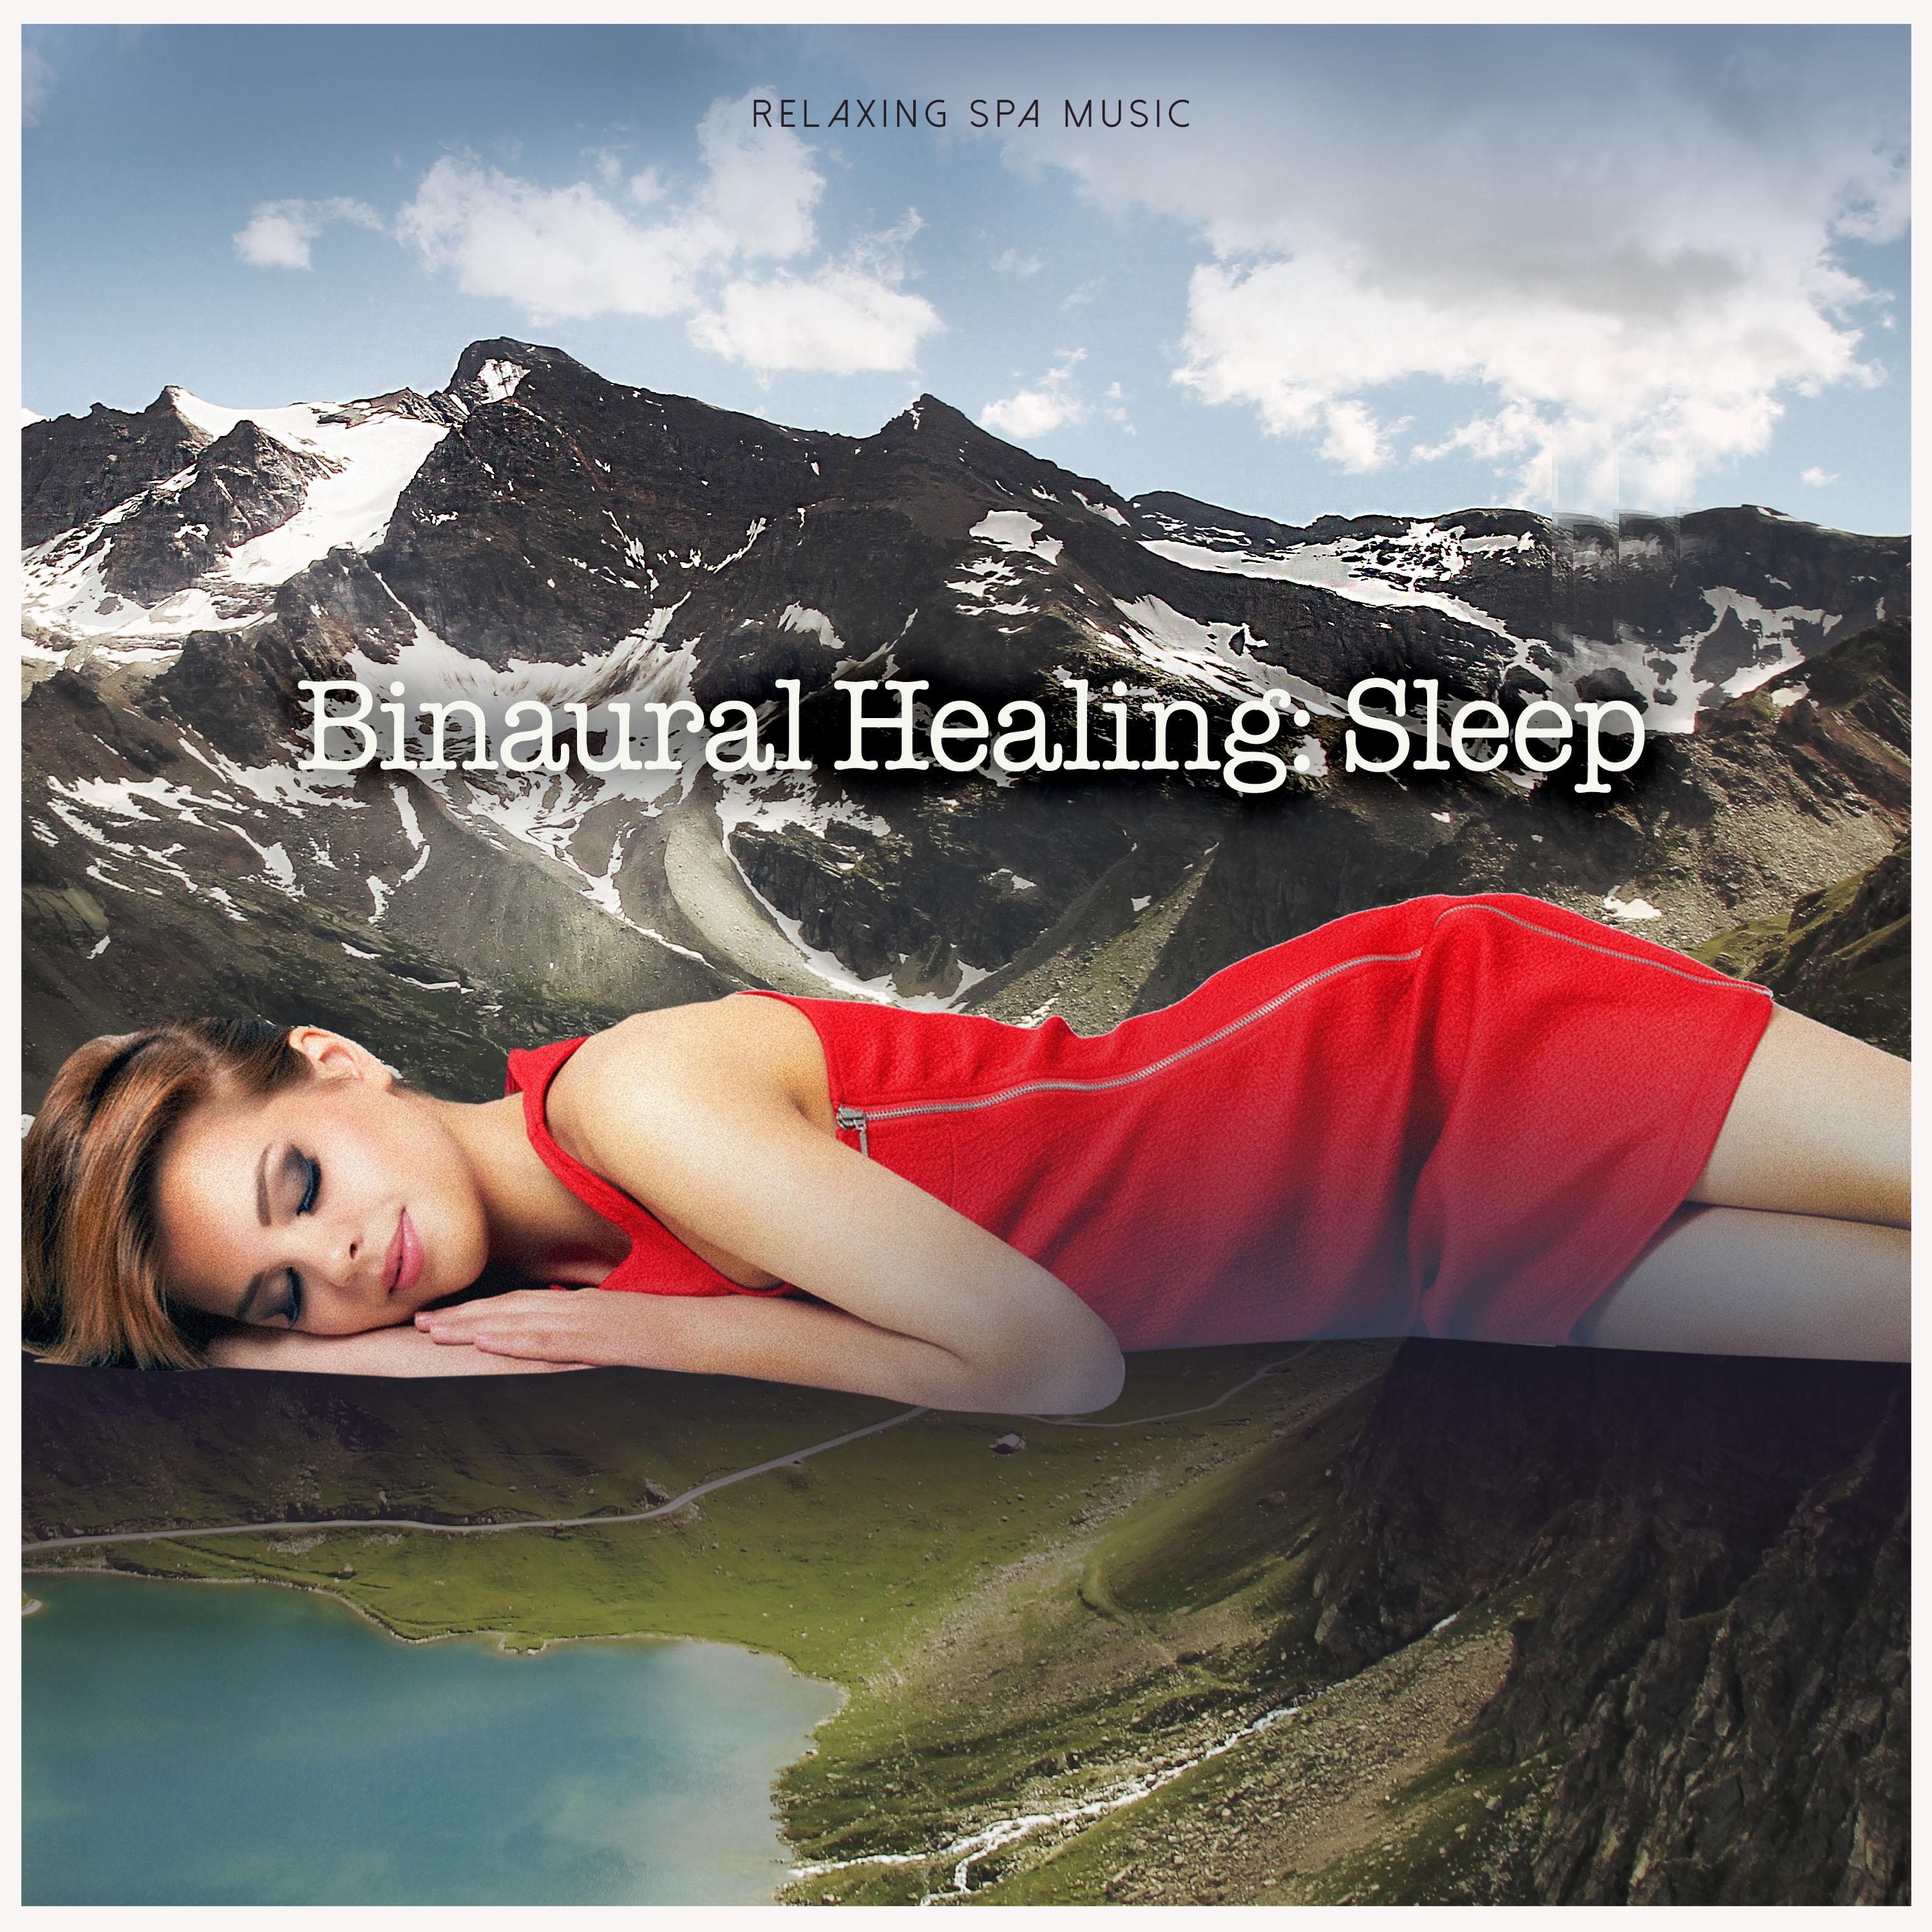 Binaural Healing: Sleep